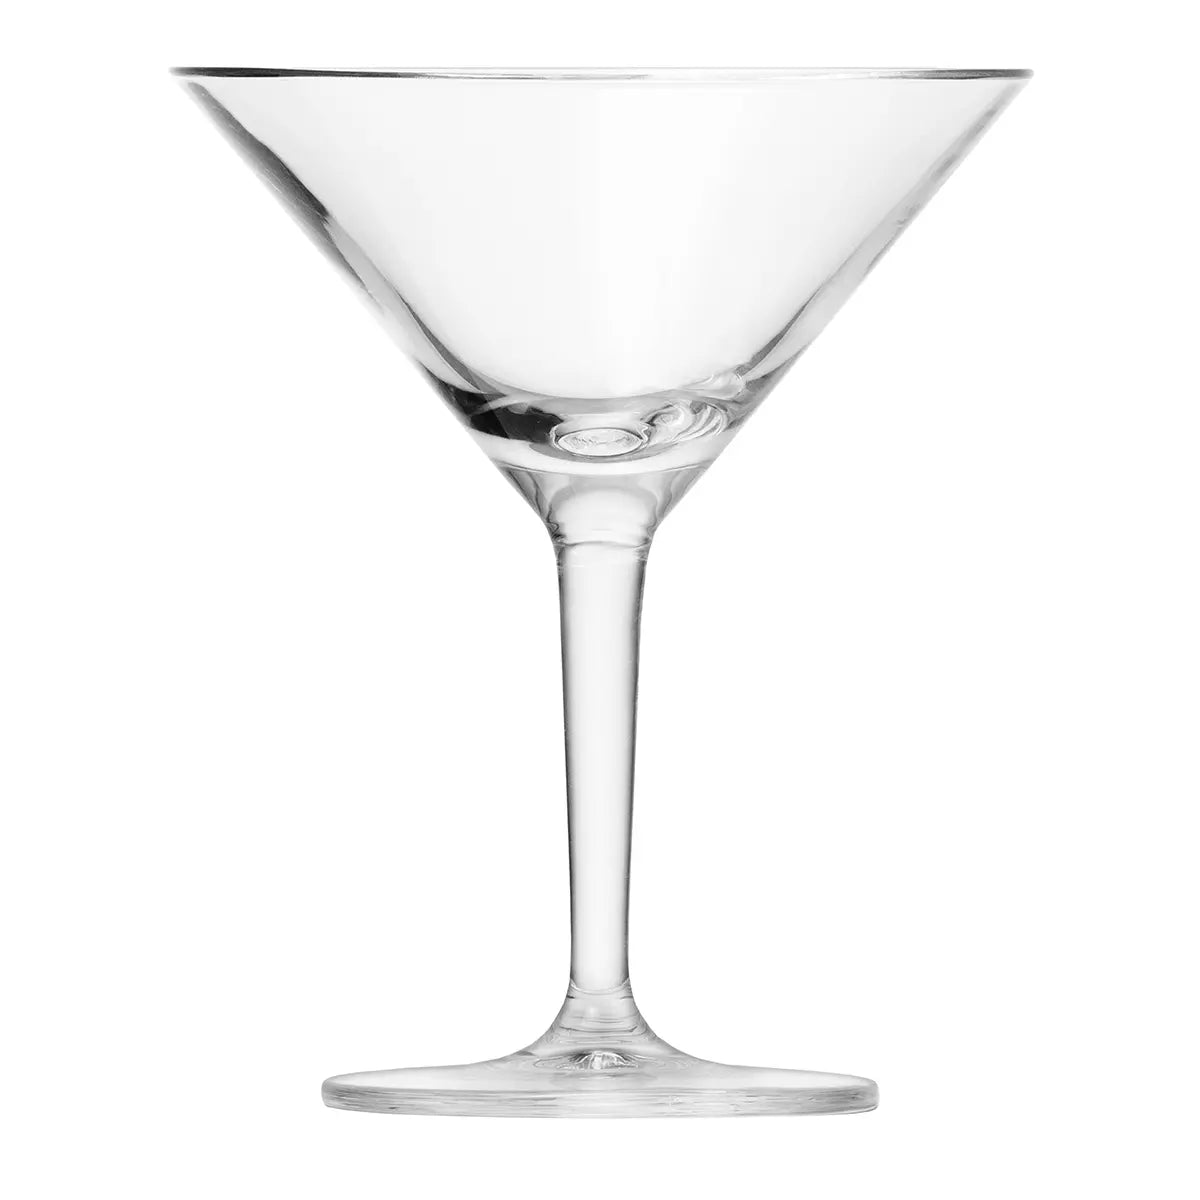 Empty Fortessa Classic Bar Martini glass